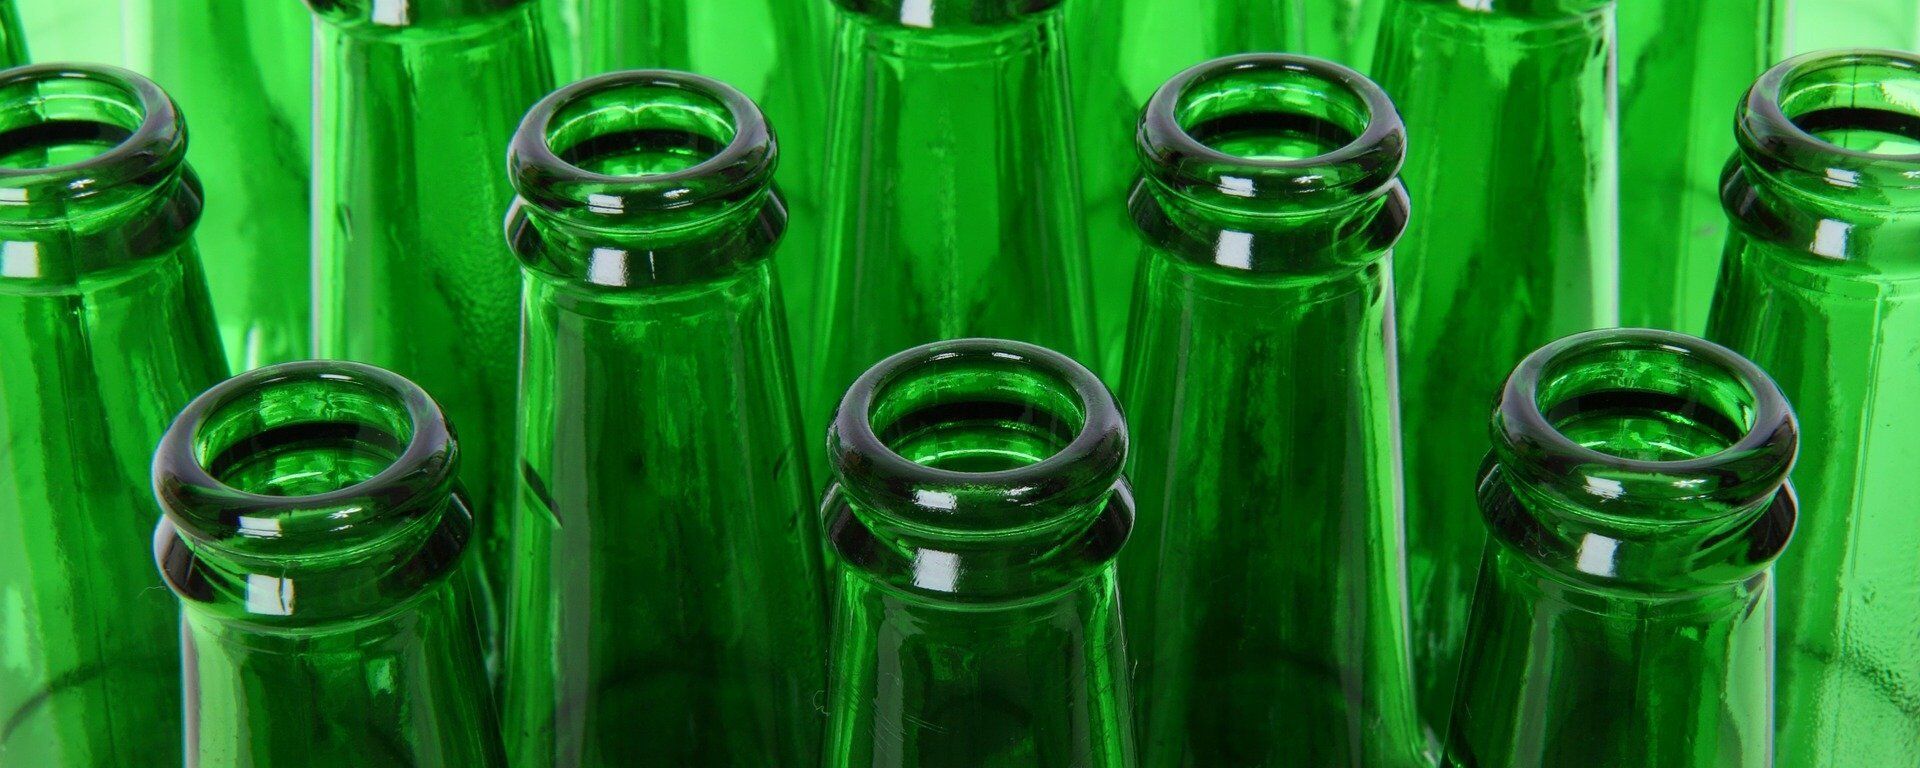 Горлышки зеленых бутылок, архивное фото - Sputnik Литва, 1920, 01.11.2021